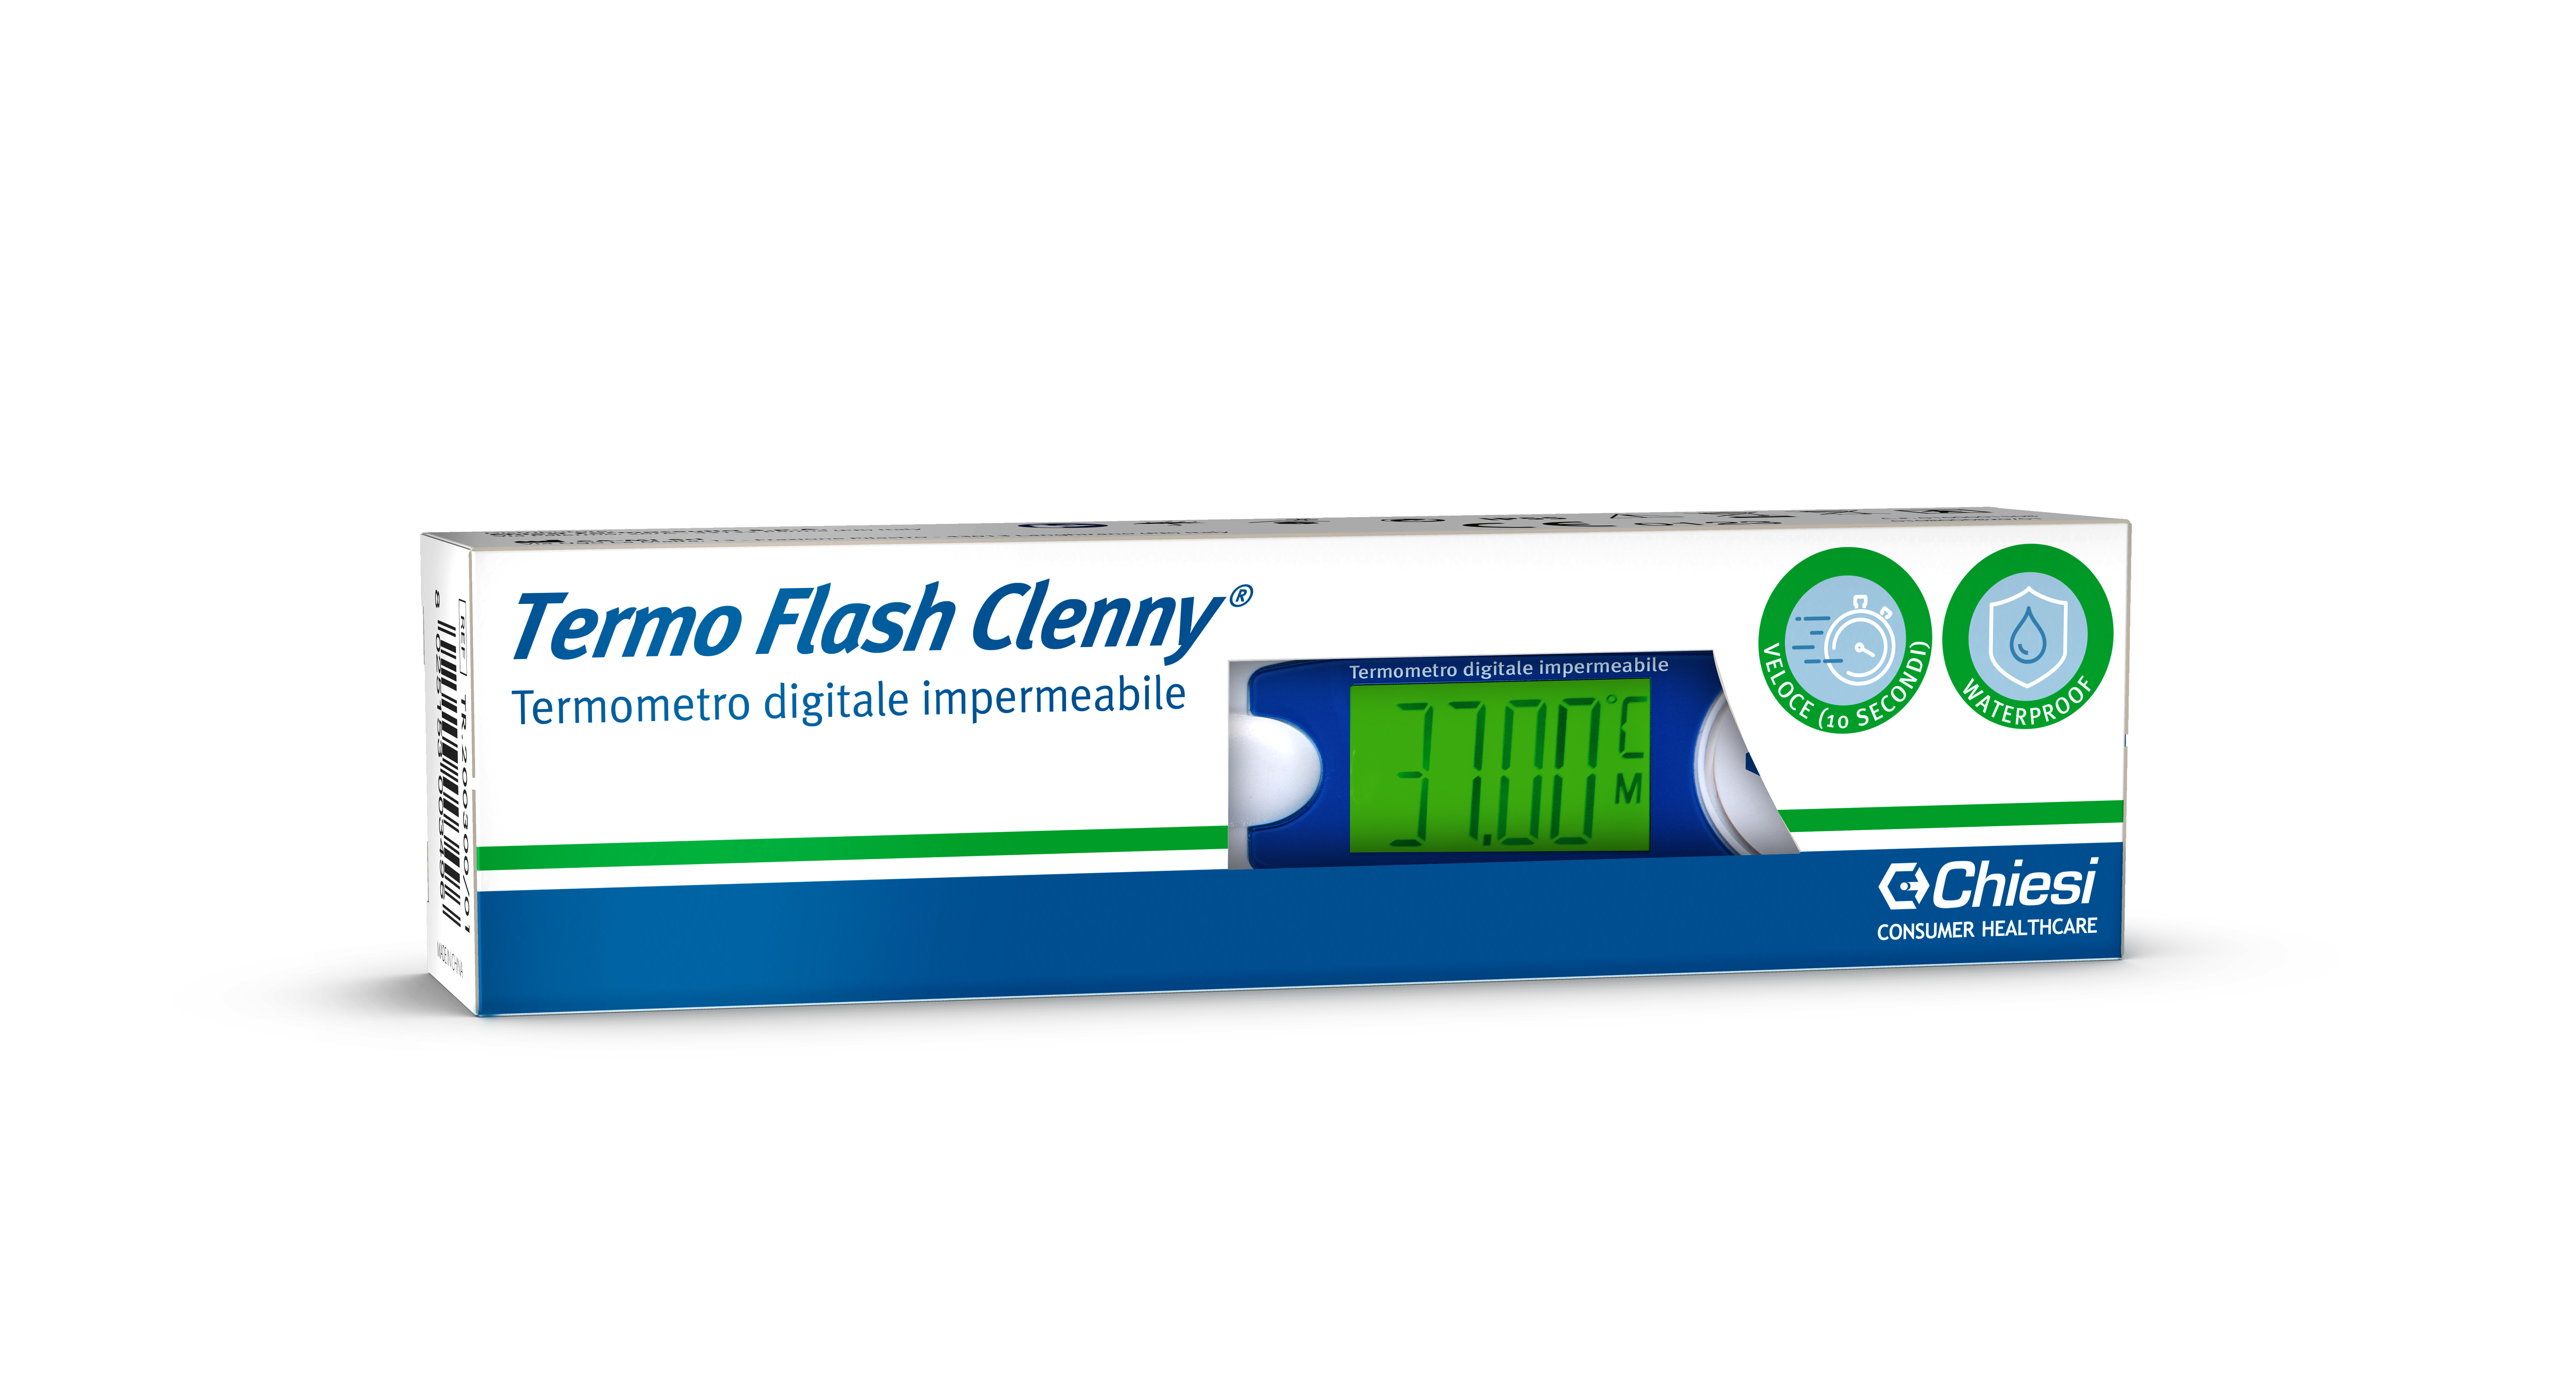 Immagine della confezione di Termo Flash Clenny, dispositivo medico di Chiesi Farmaceutici S.p.A.